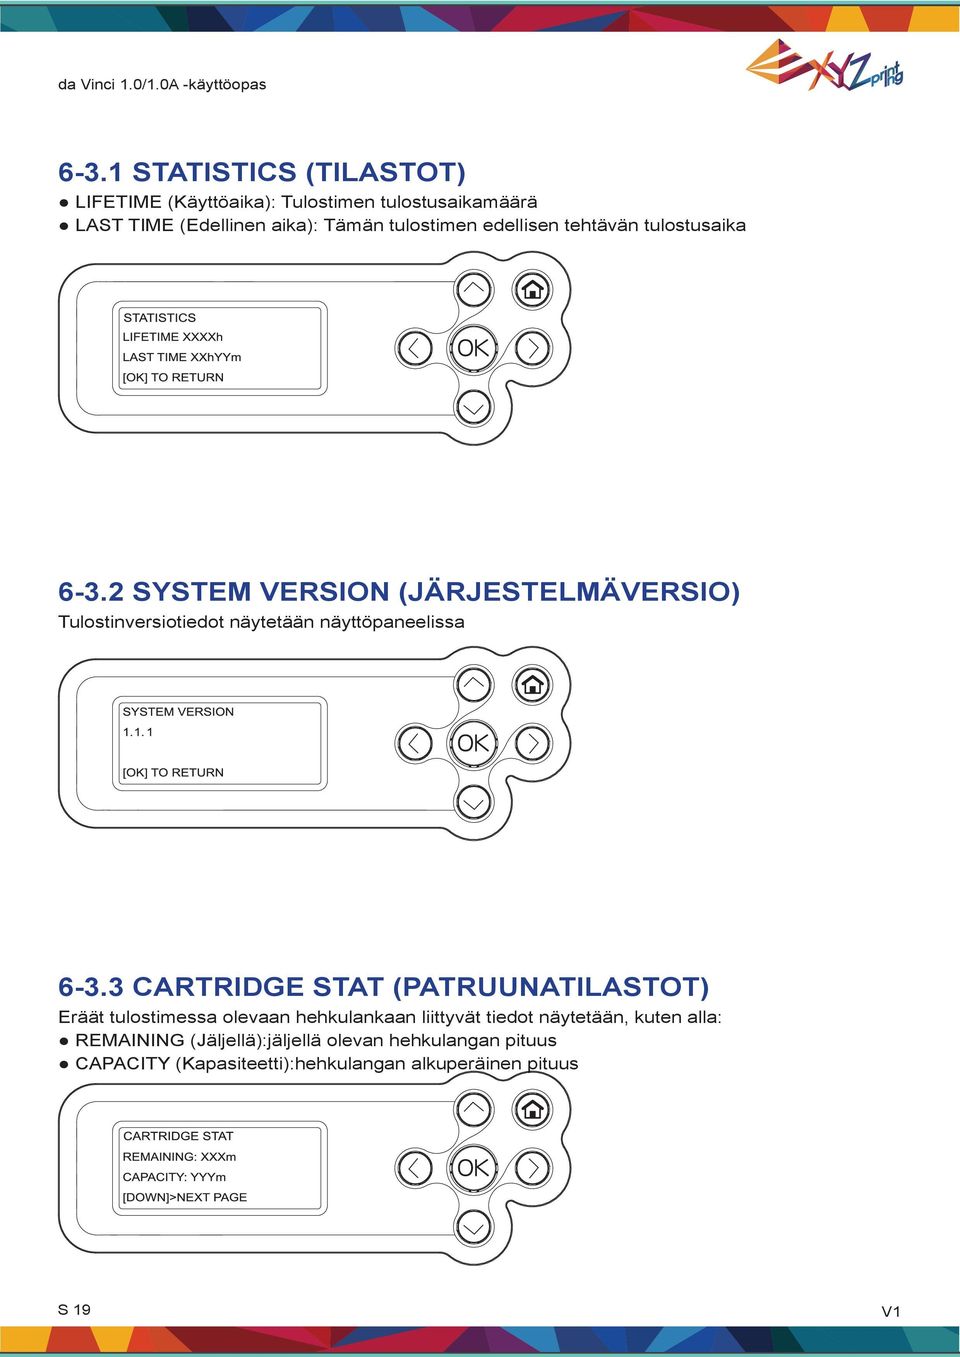 2 SYSTEM VERSION (JÄRJESTELMÄVERSIO) Tulostinversiotiedot näytetään näyttöpaneelissa 6-3.